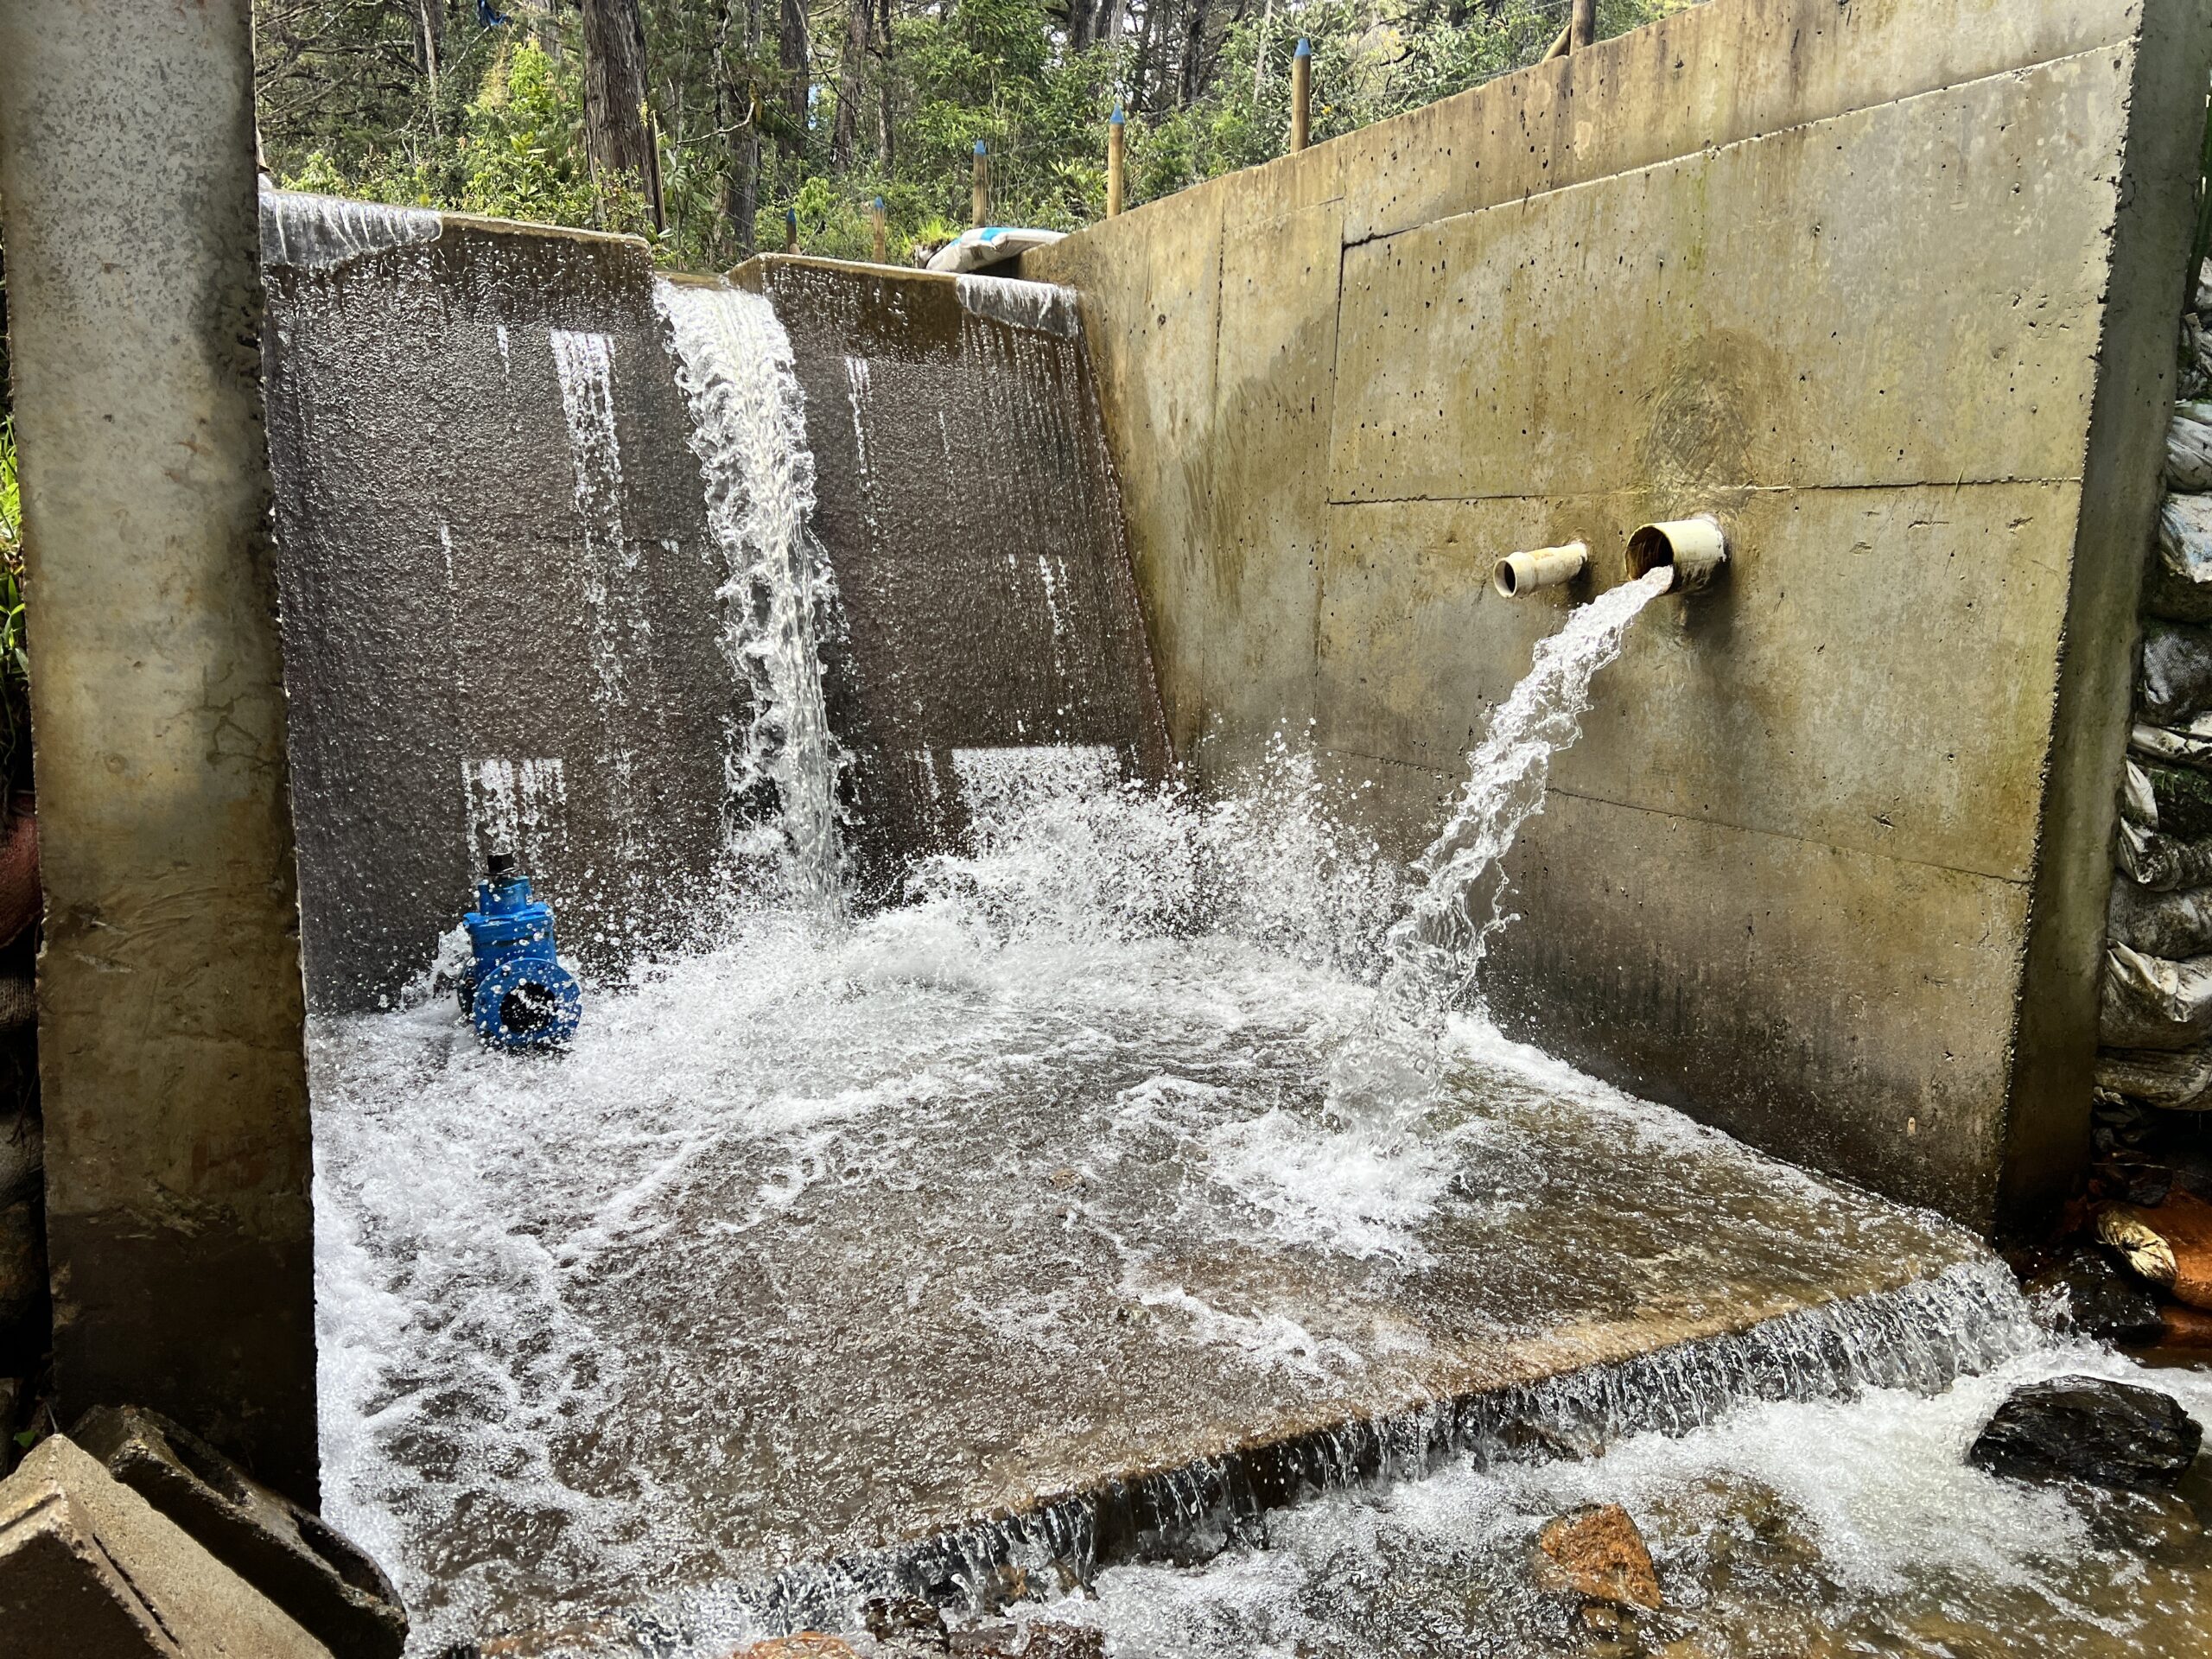 461 familias de la vereda Piedra Gorda tendrán servicio de agua potable sin interrupciones conla ampliación del acueducto Las Flores, en Santa Elena